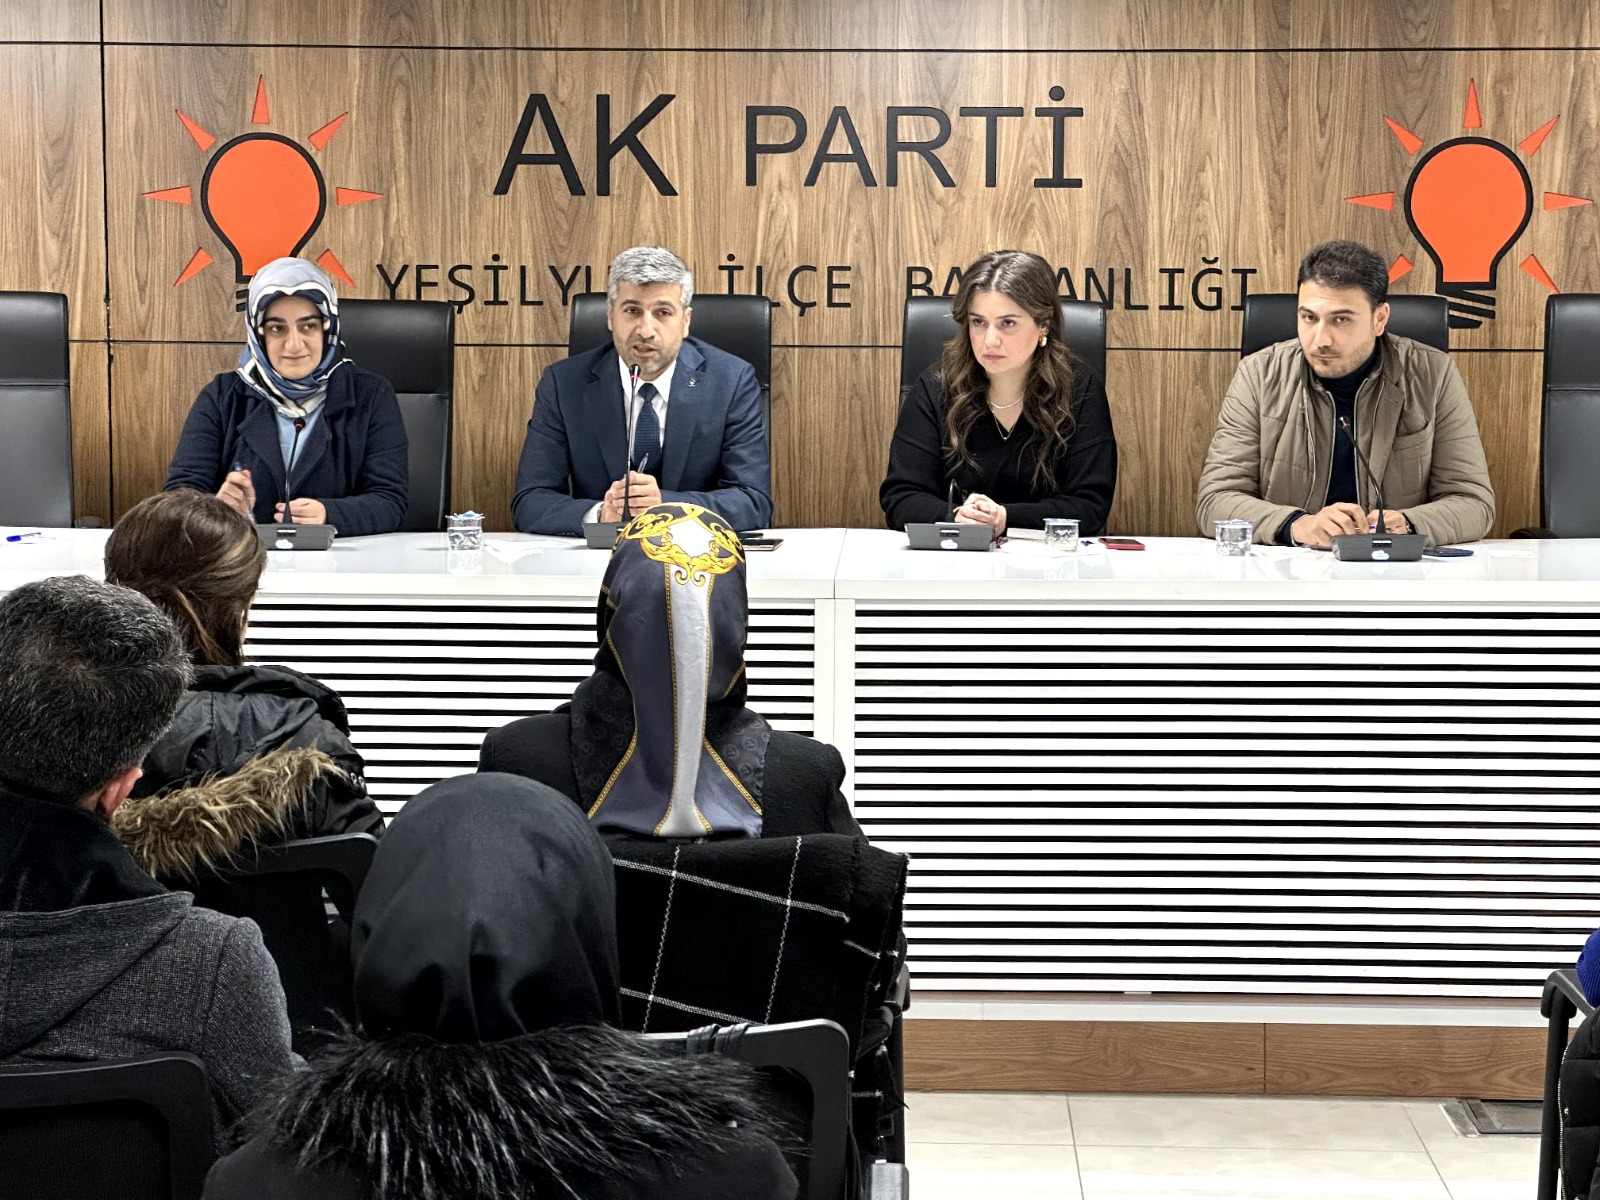 AK Parti Yeşilyurt İlçe Tanıtım ve Medya Başkanlığı tarafından, ‘İstişare ve Değerlendirme Toplantısı’ gerçekleştirildi.